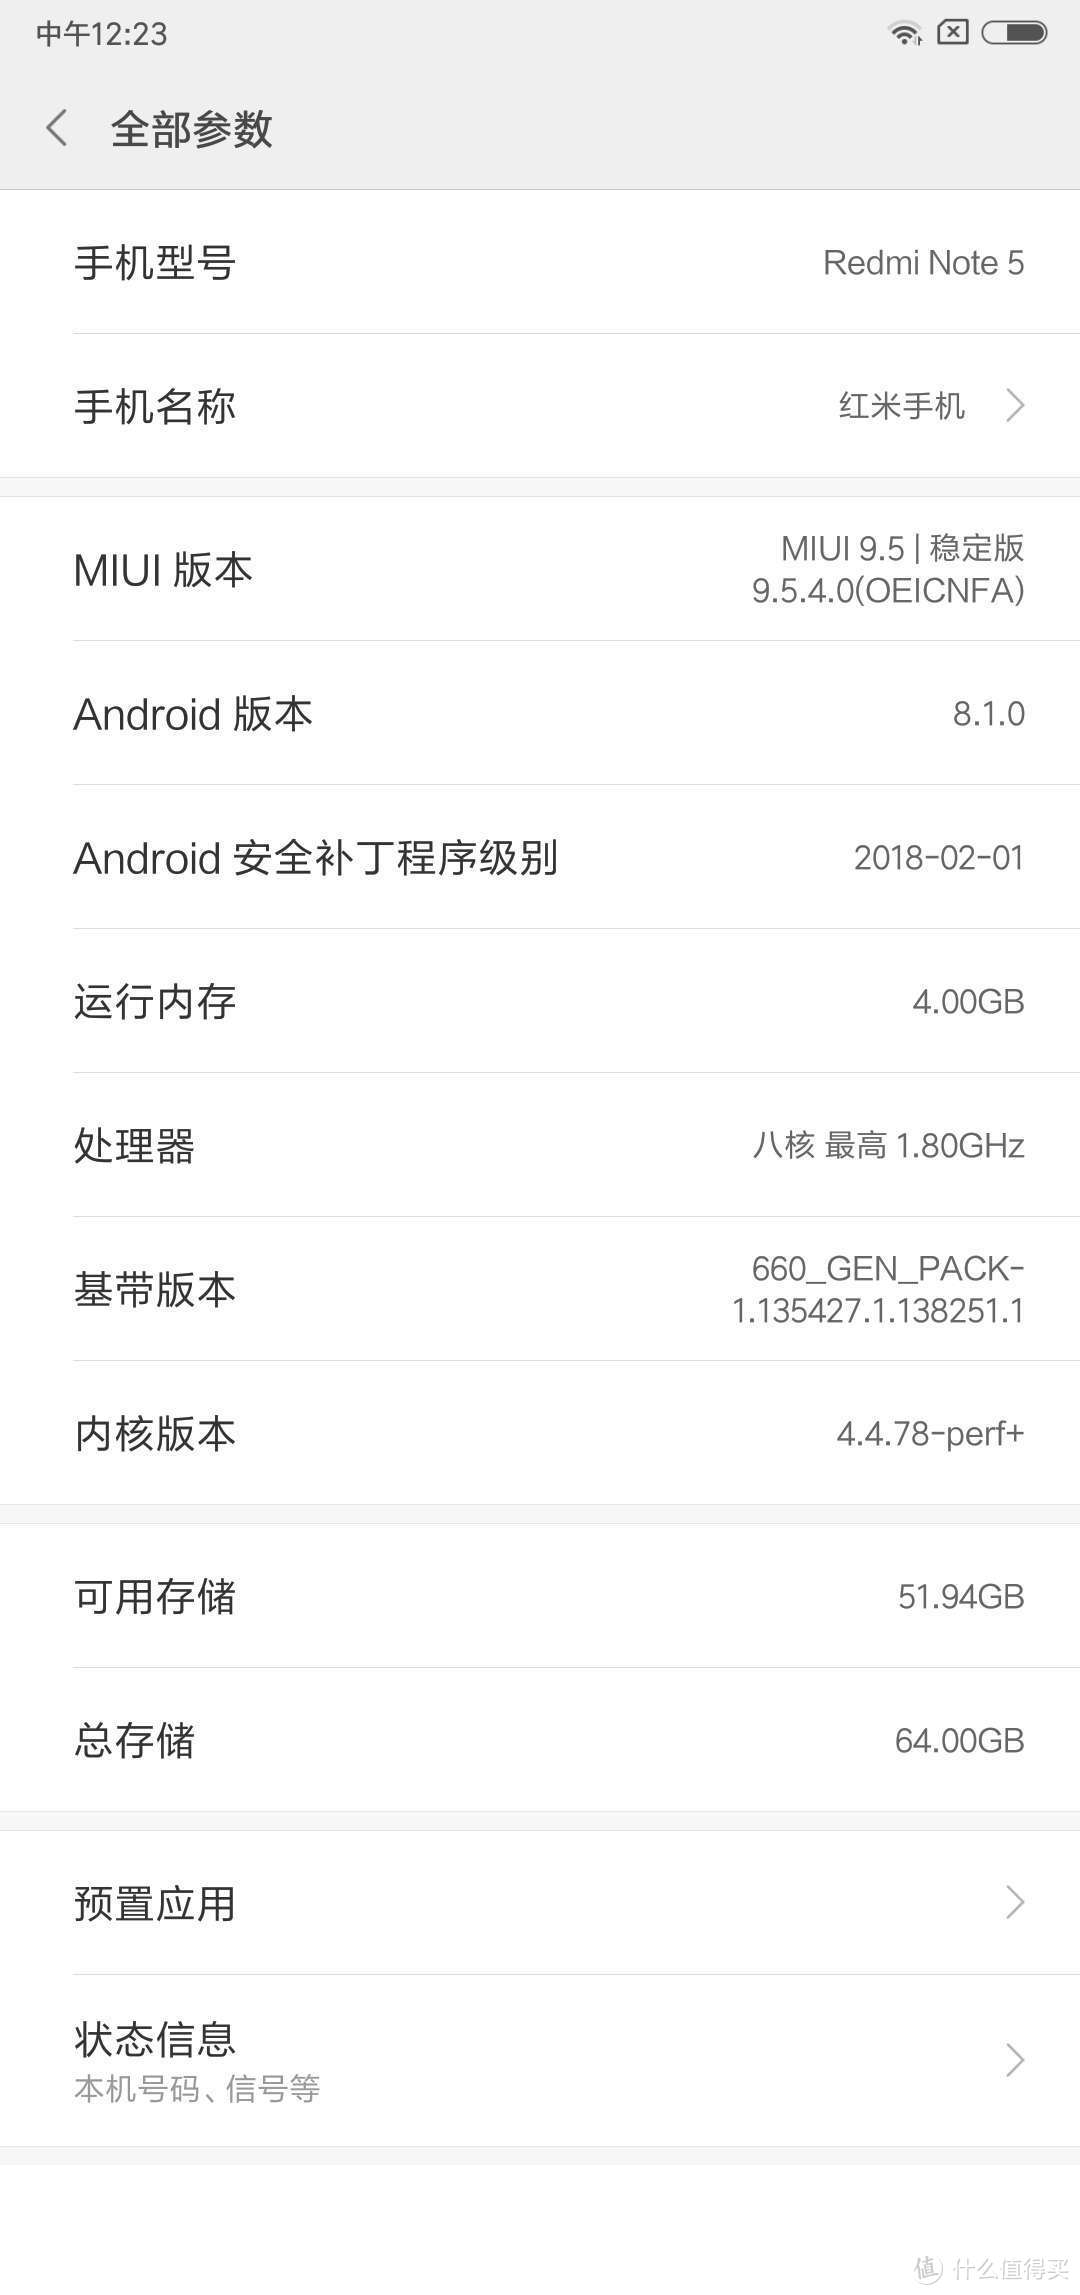 MI 小米 红米Note5 4+64G 手机 开箱